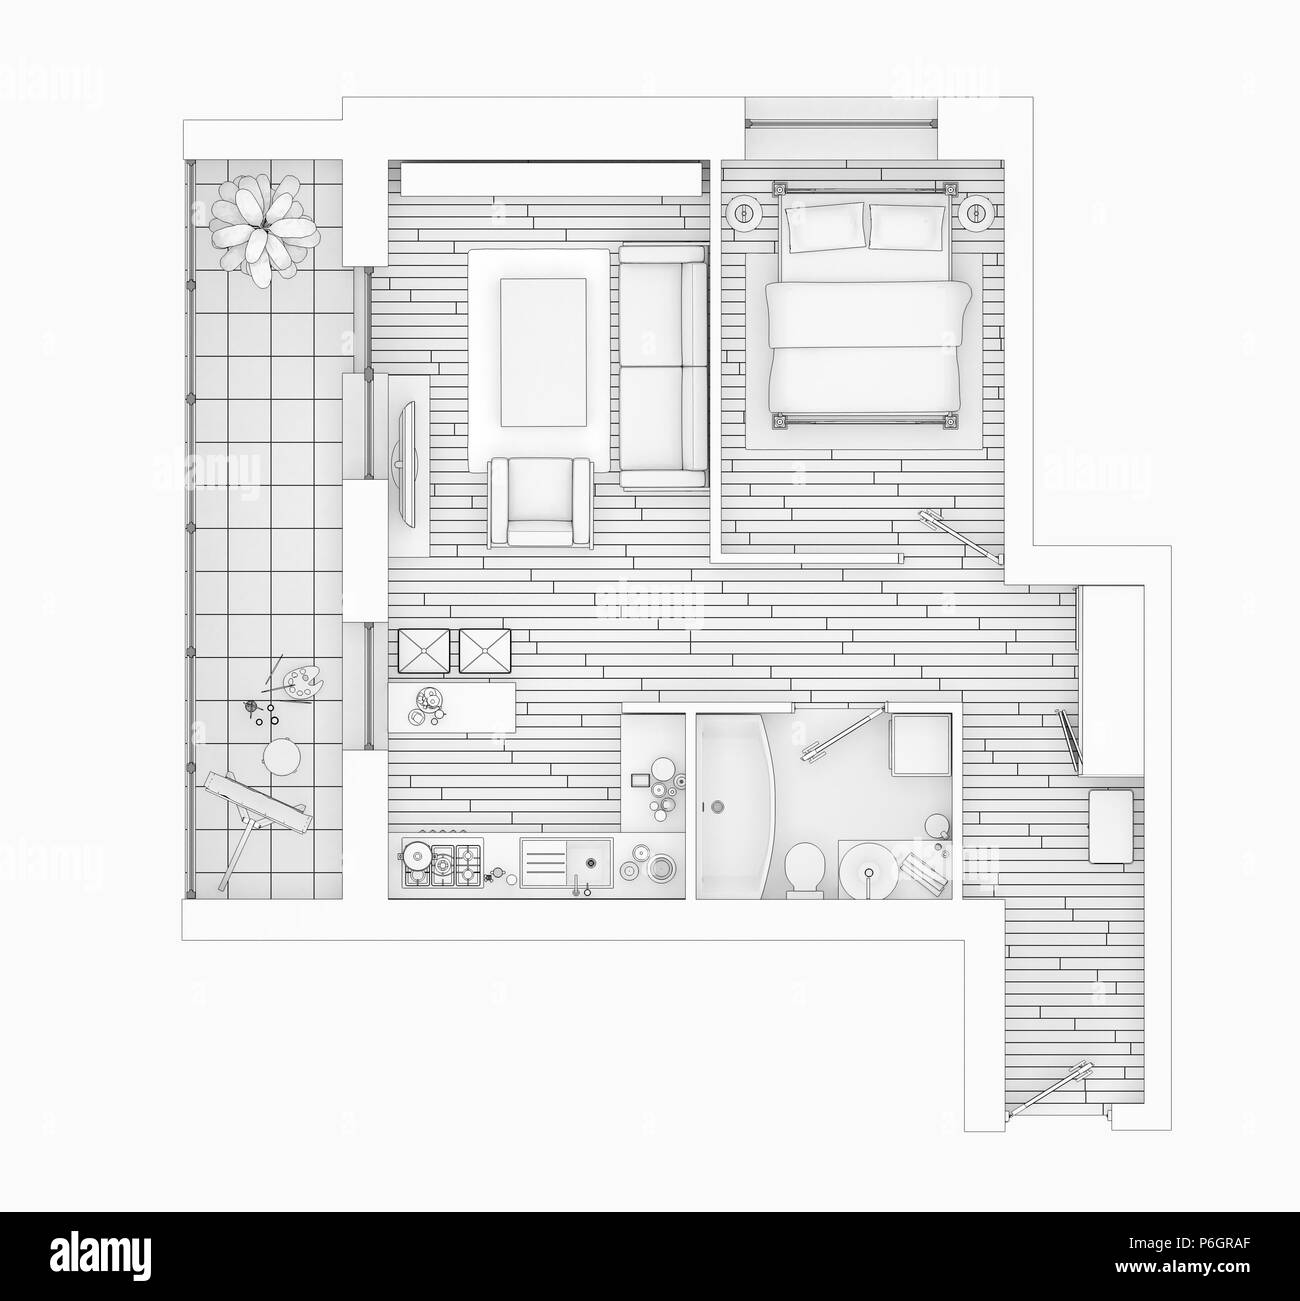 Plan d'étage dessin de ligne sur un fond blanc, des maquettes de maison meublé vacances Banque D'Images